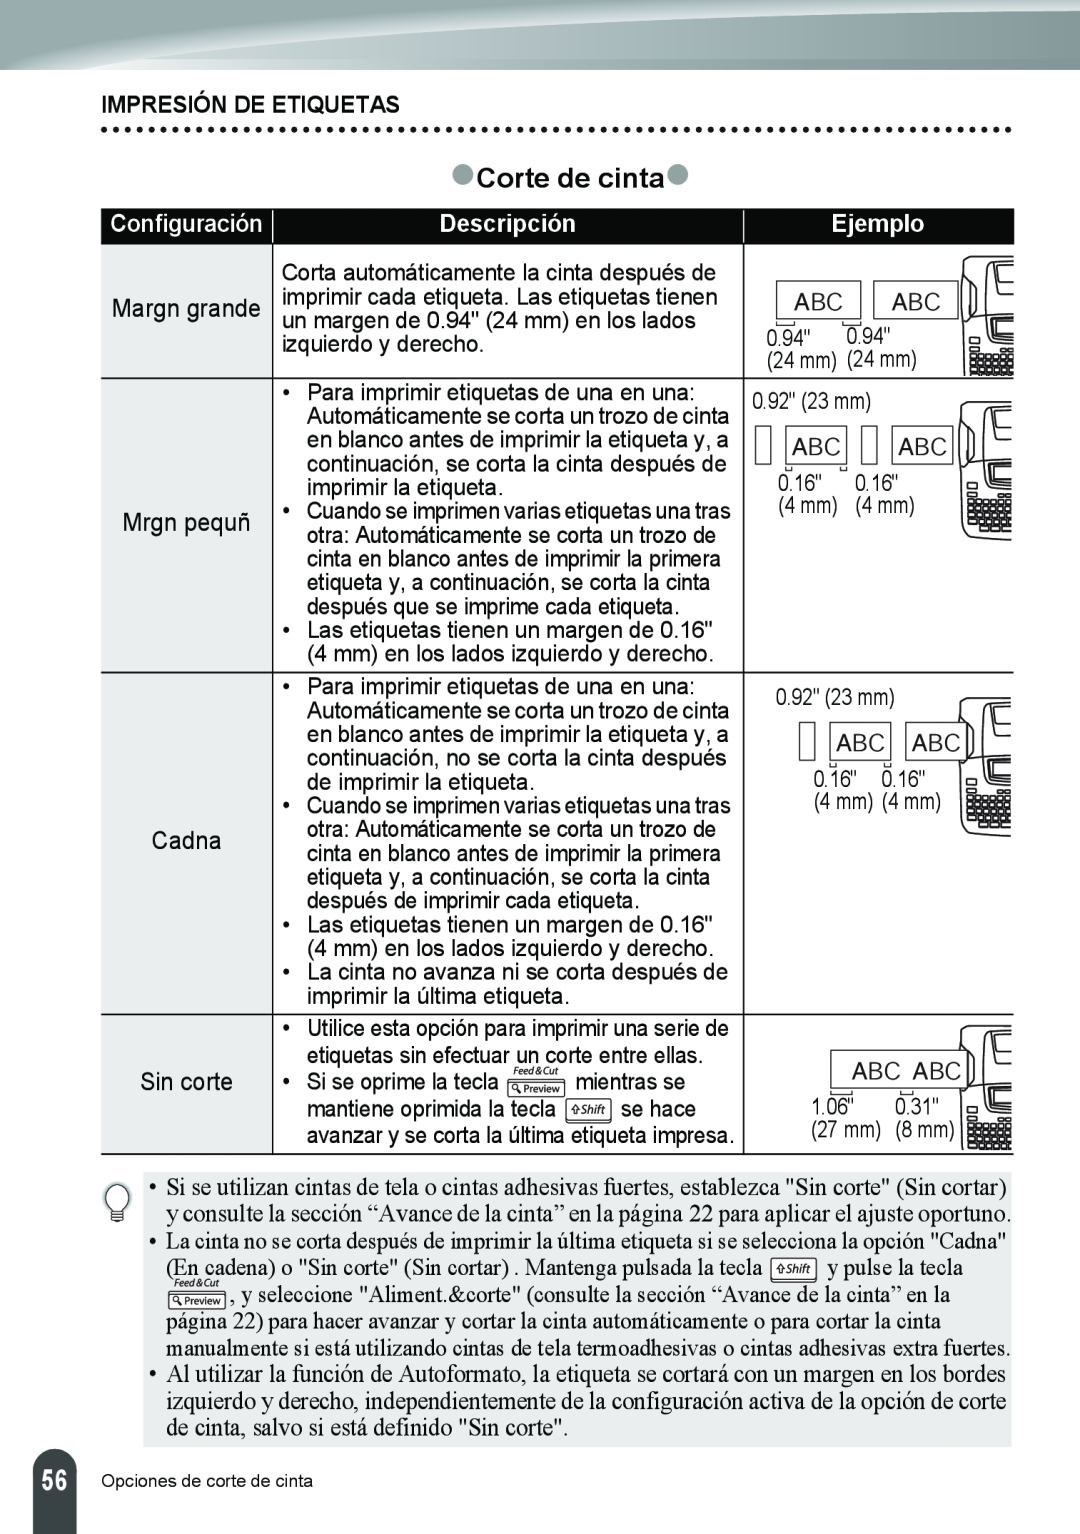 Brother PT-2110, PT-2100 manual zCorte de cintaz, Impresión De Etiquetas, Descripción, Ejemplo 